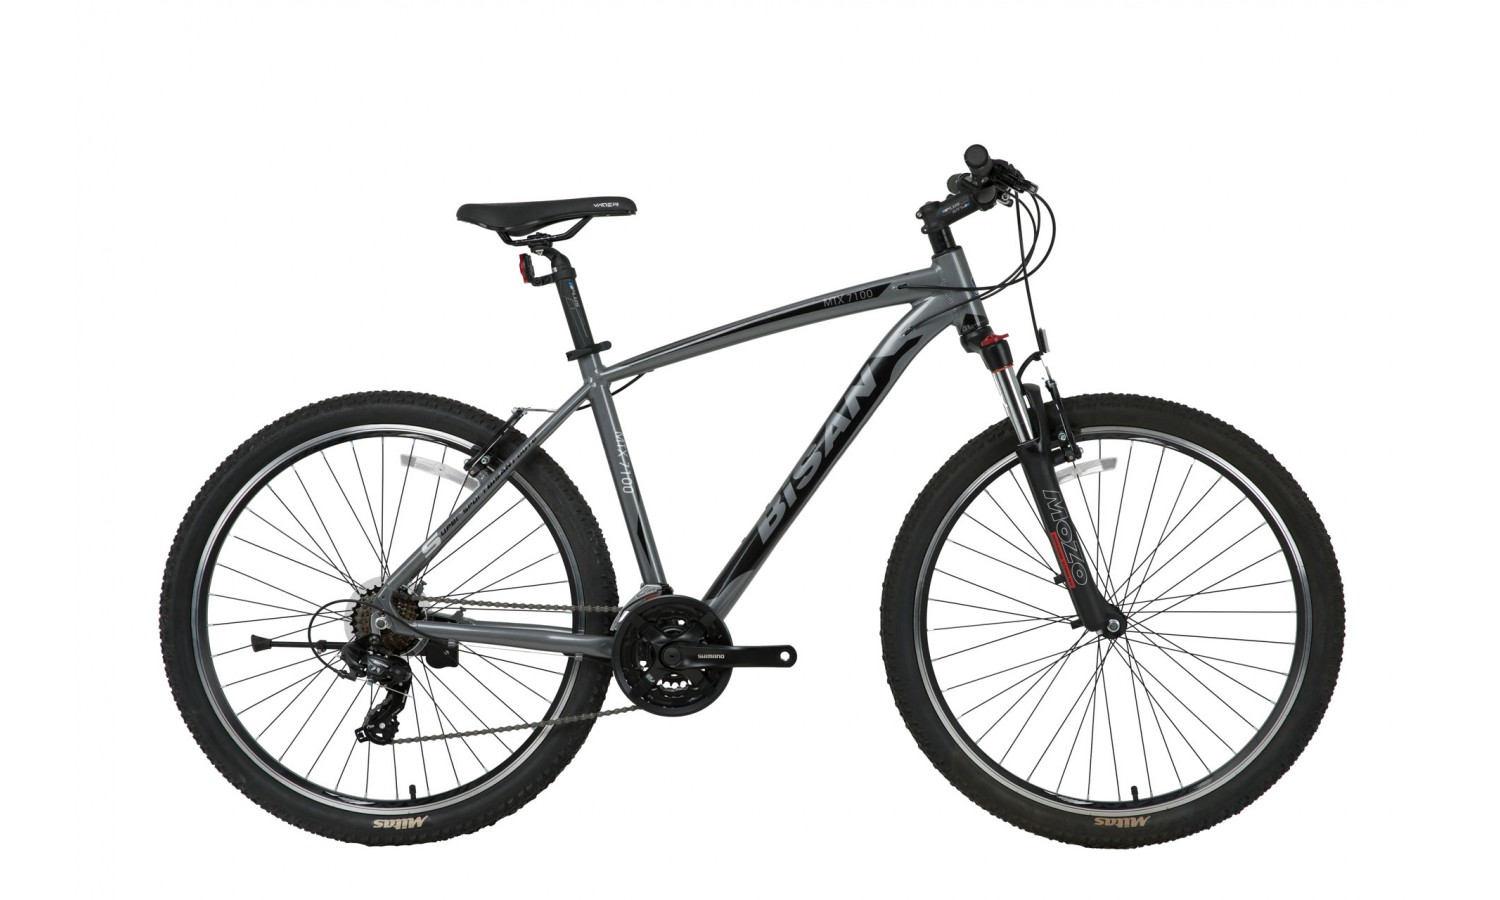 Bisan Mtx 7100 26 V Dağ Bisikleti (Gri Siyah)